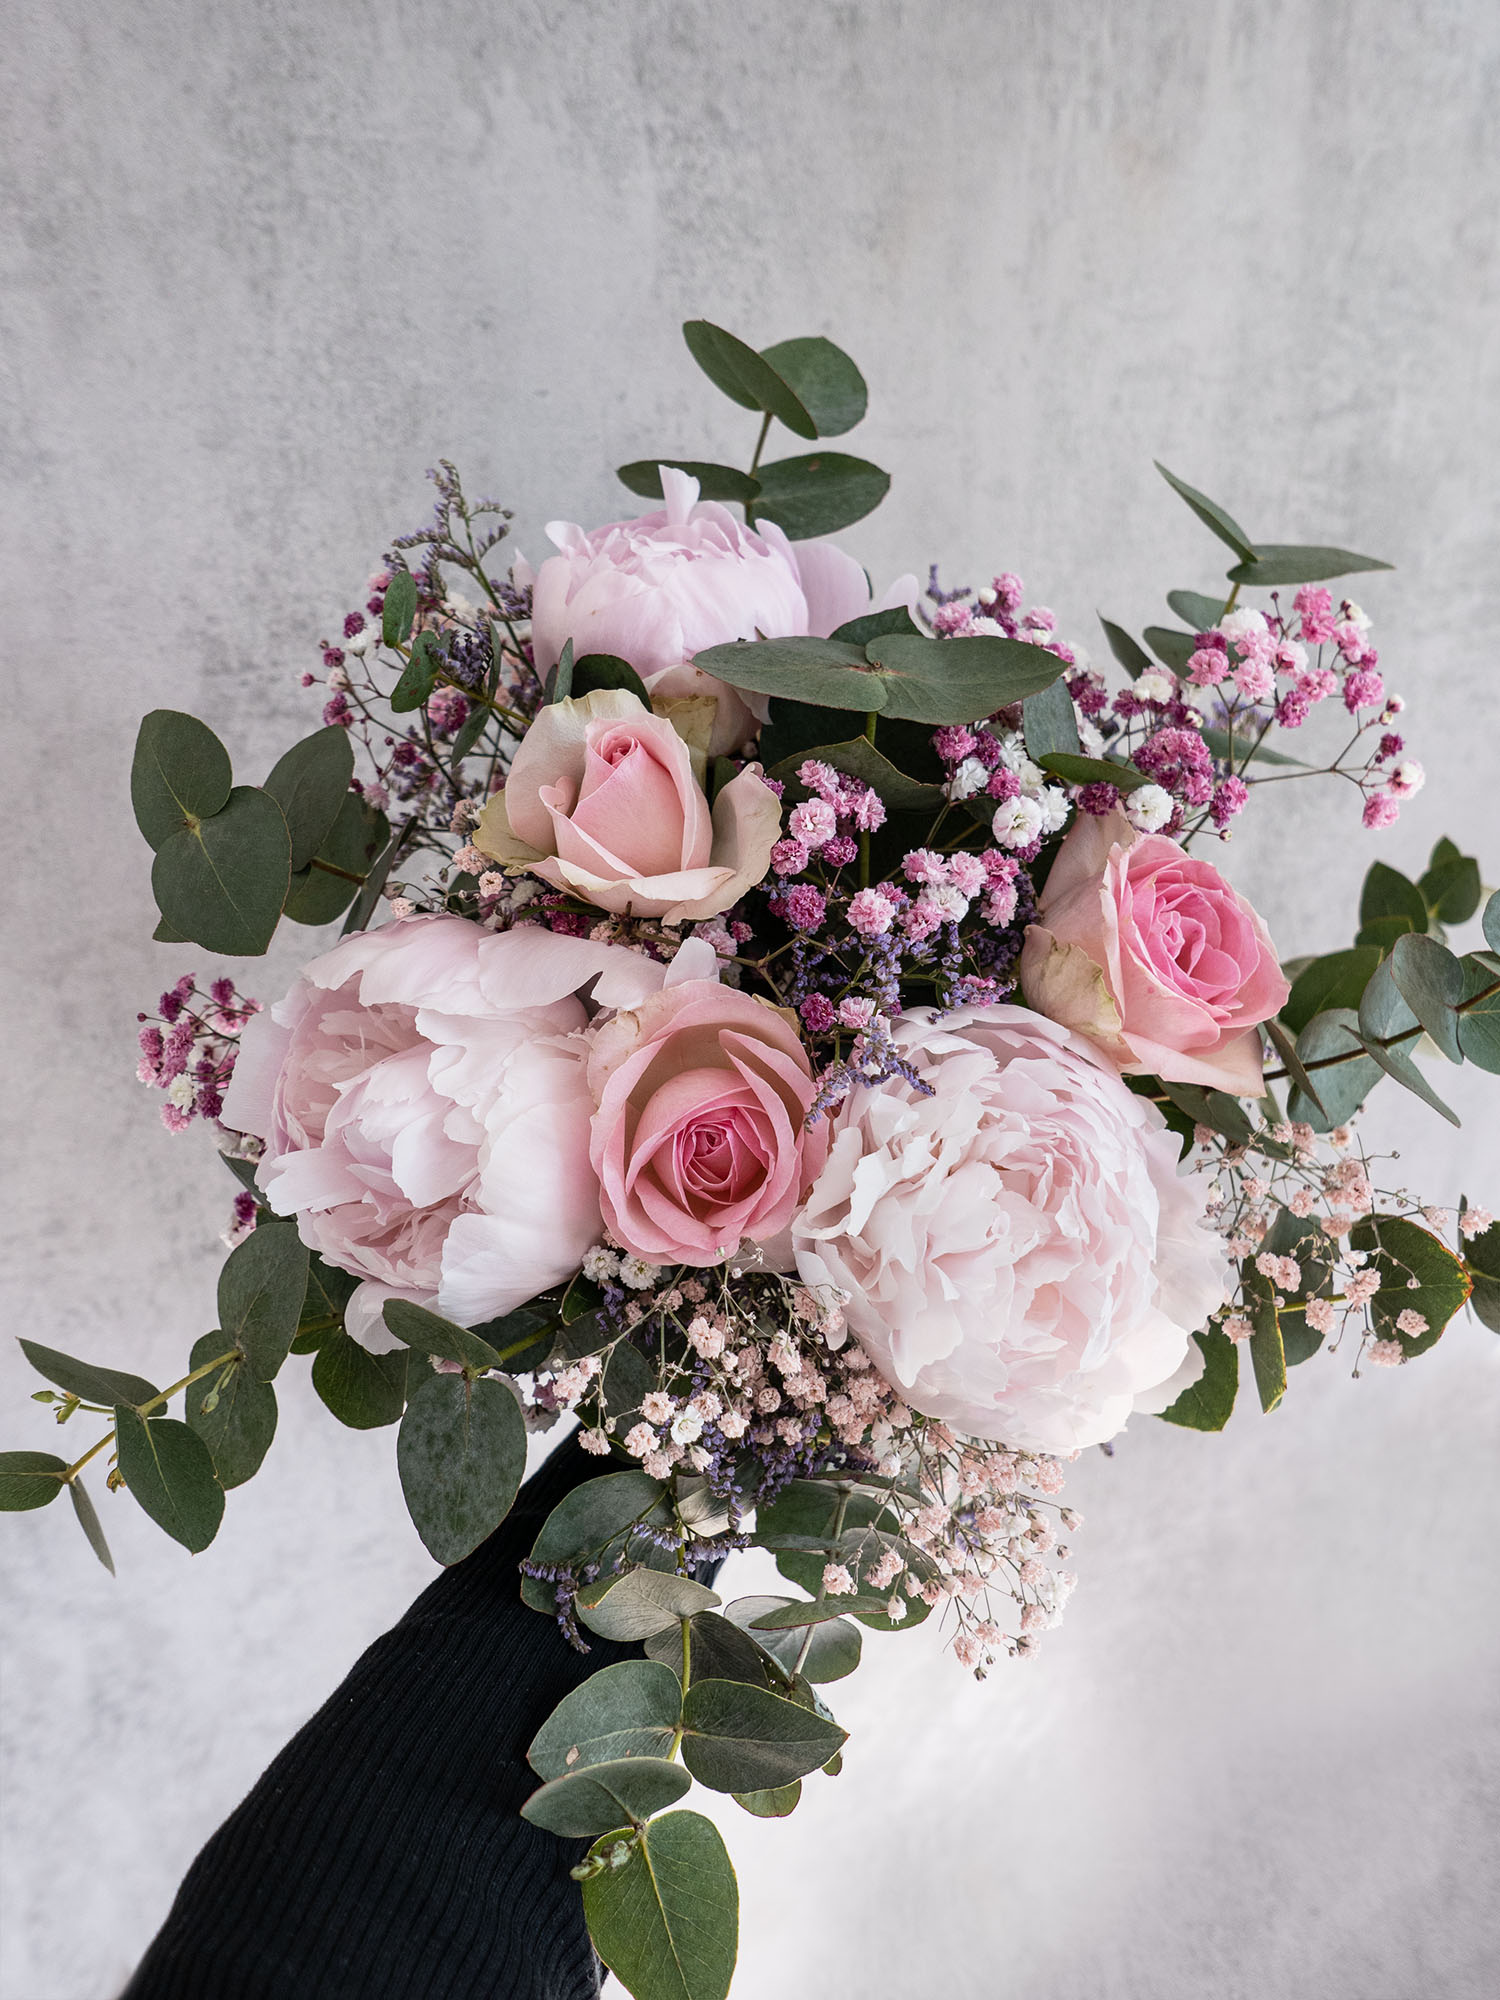 Das Sweatheart Bouquet hat eine sehr romantische und feminine Wirkung und ist das perfekte Geschenk für Deine Liebsten.

Die Kombination aus zarten Blüten und gefärbtem Schleierkraut in kräftigem Pink verleiht dem Bouquet einen modernen Twist. Der silber-grüne Eukalyptus sorgt für eine elegante und beruhigende Note.

Du hast die Möglichkeit, die Blumen als Strauß zu binden oder sie in deiner Lieblingsvase zu arrangieren und deinem Zuhause einen romantischen Touch zu verleihen. Kreiere mit diesem Bouquet deine eigenen floralen Meisterwerke und erfreue dich an der Schönheit der Natur!

 